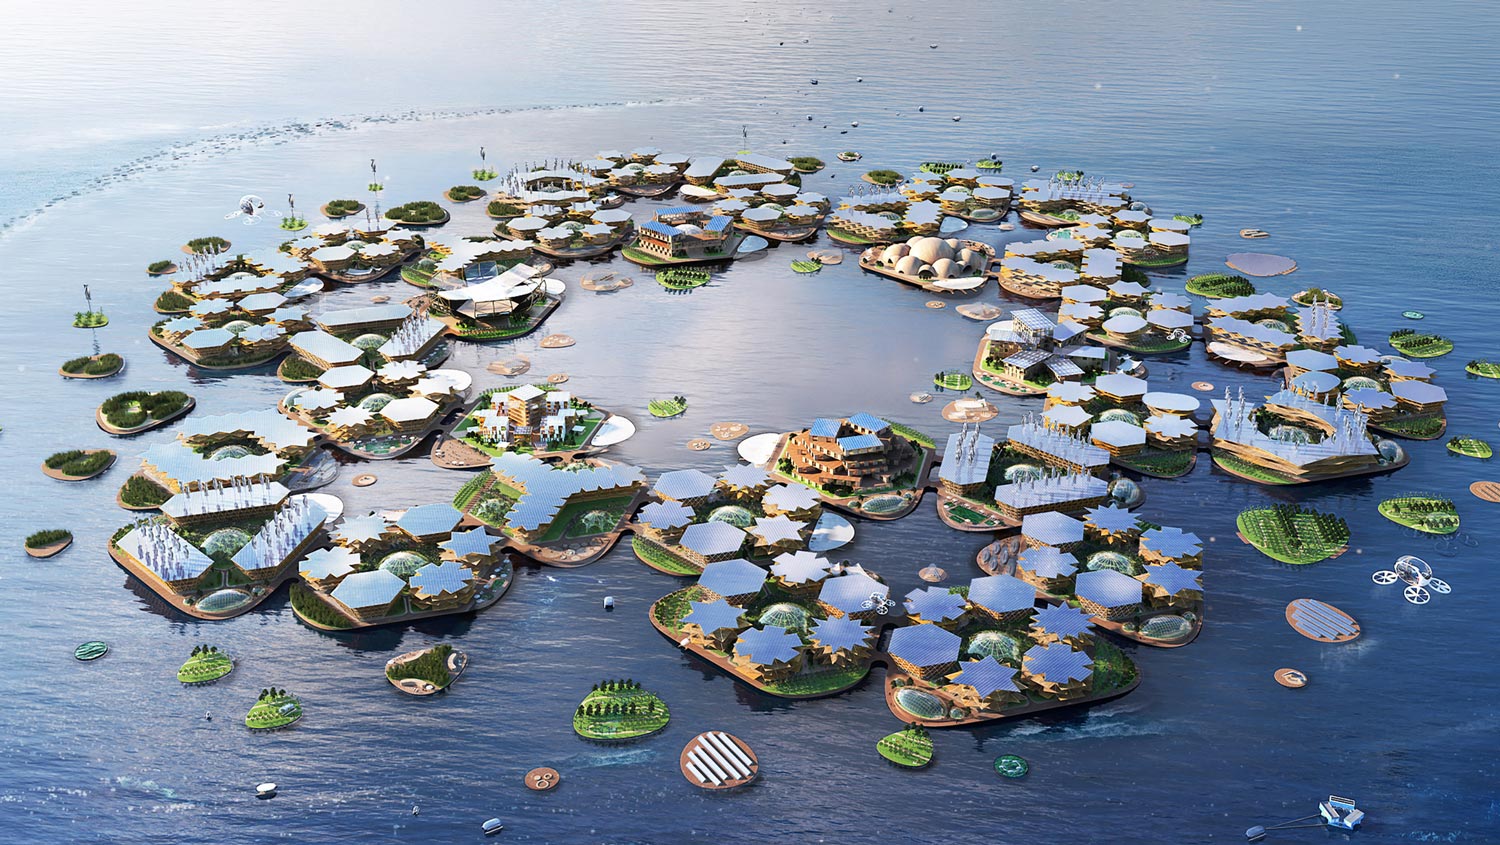 oceanix-city-floating-big-un-habitat-mit_hero.jpg